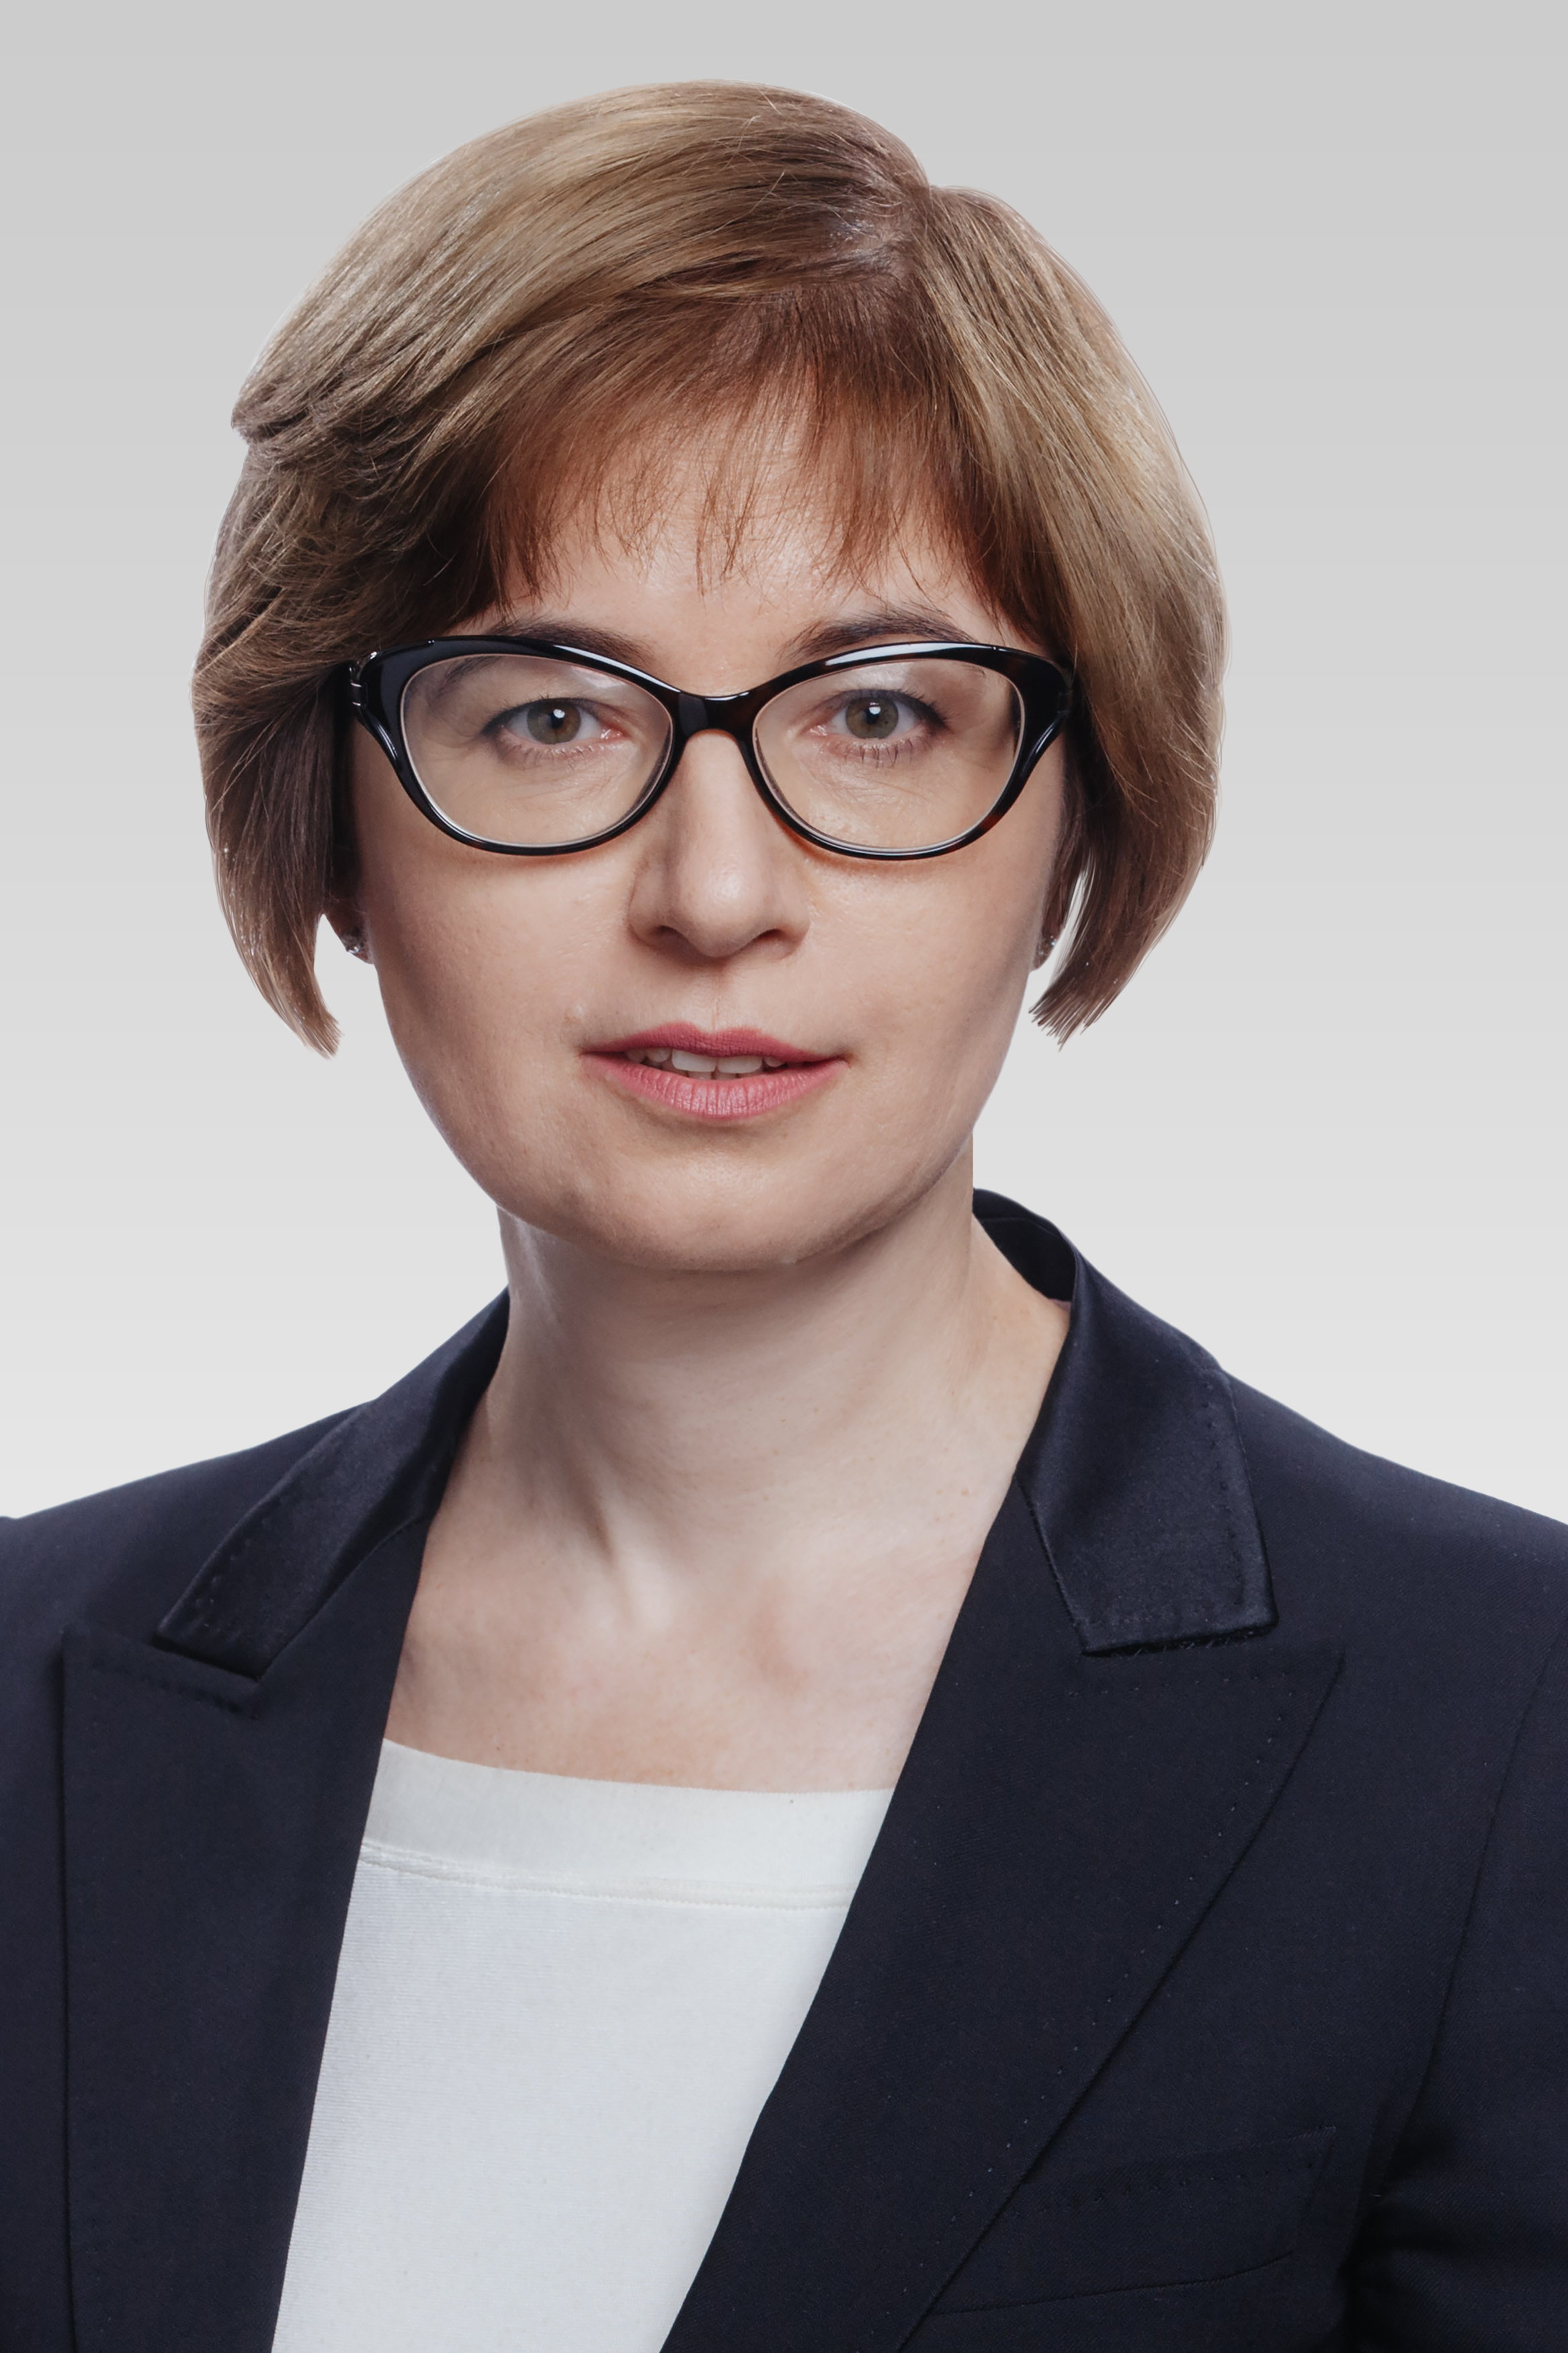 Ksenia Yudaeva